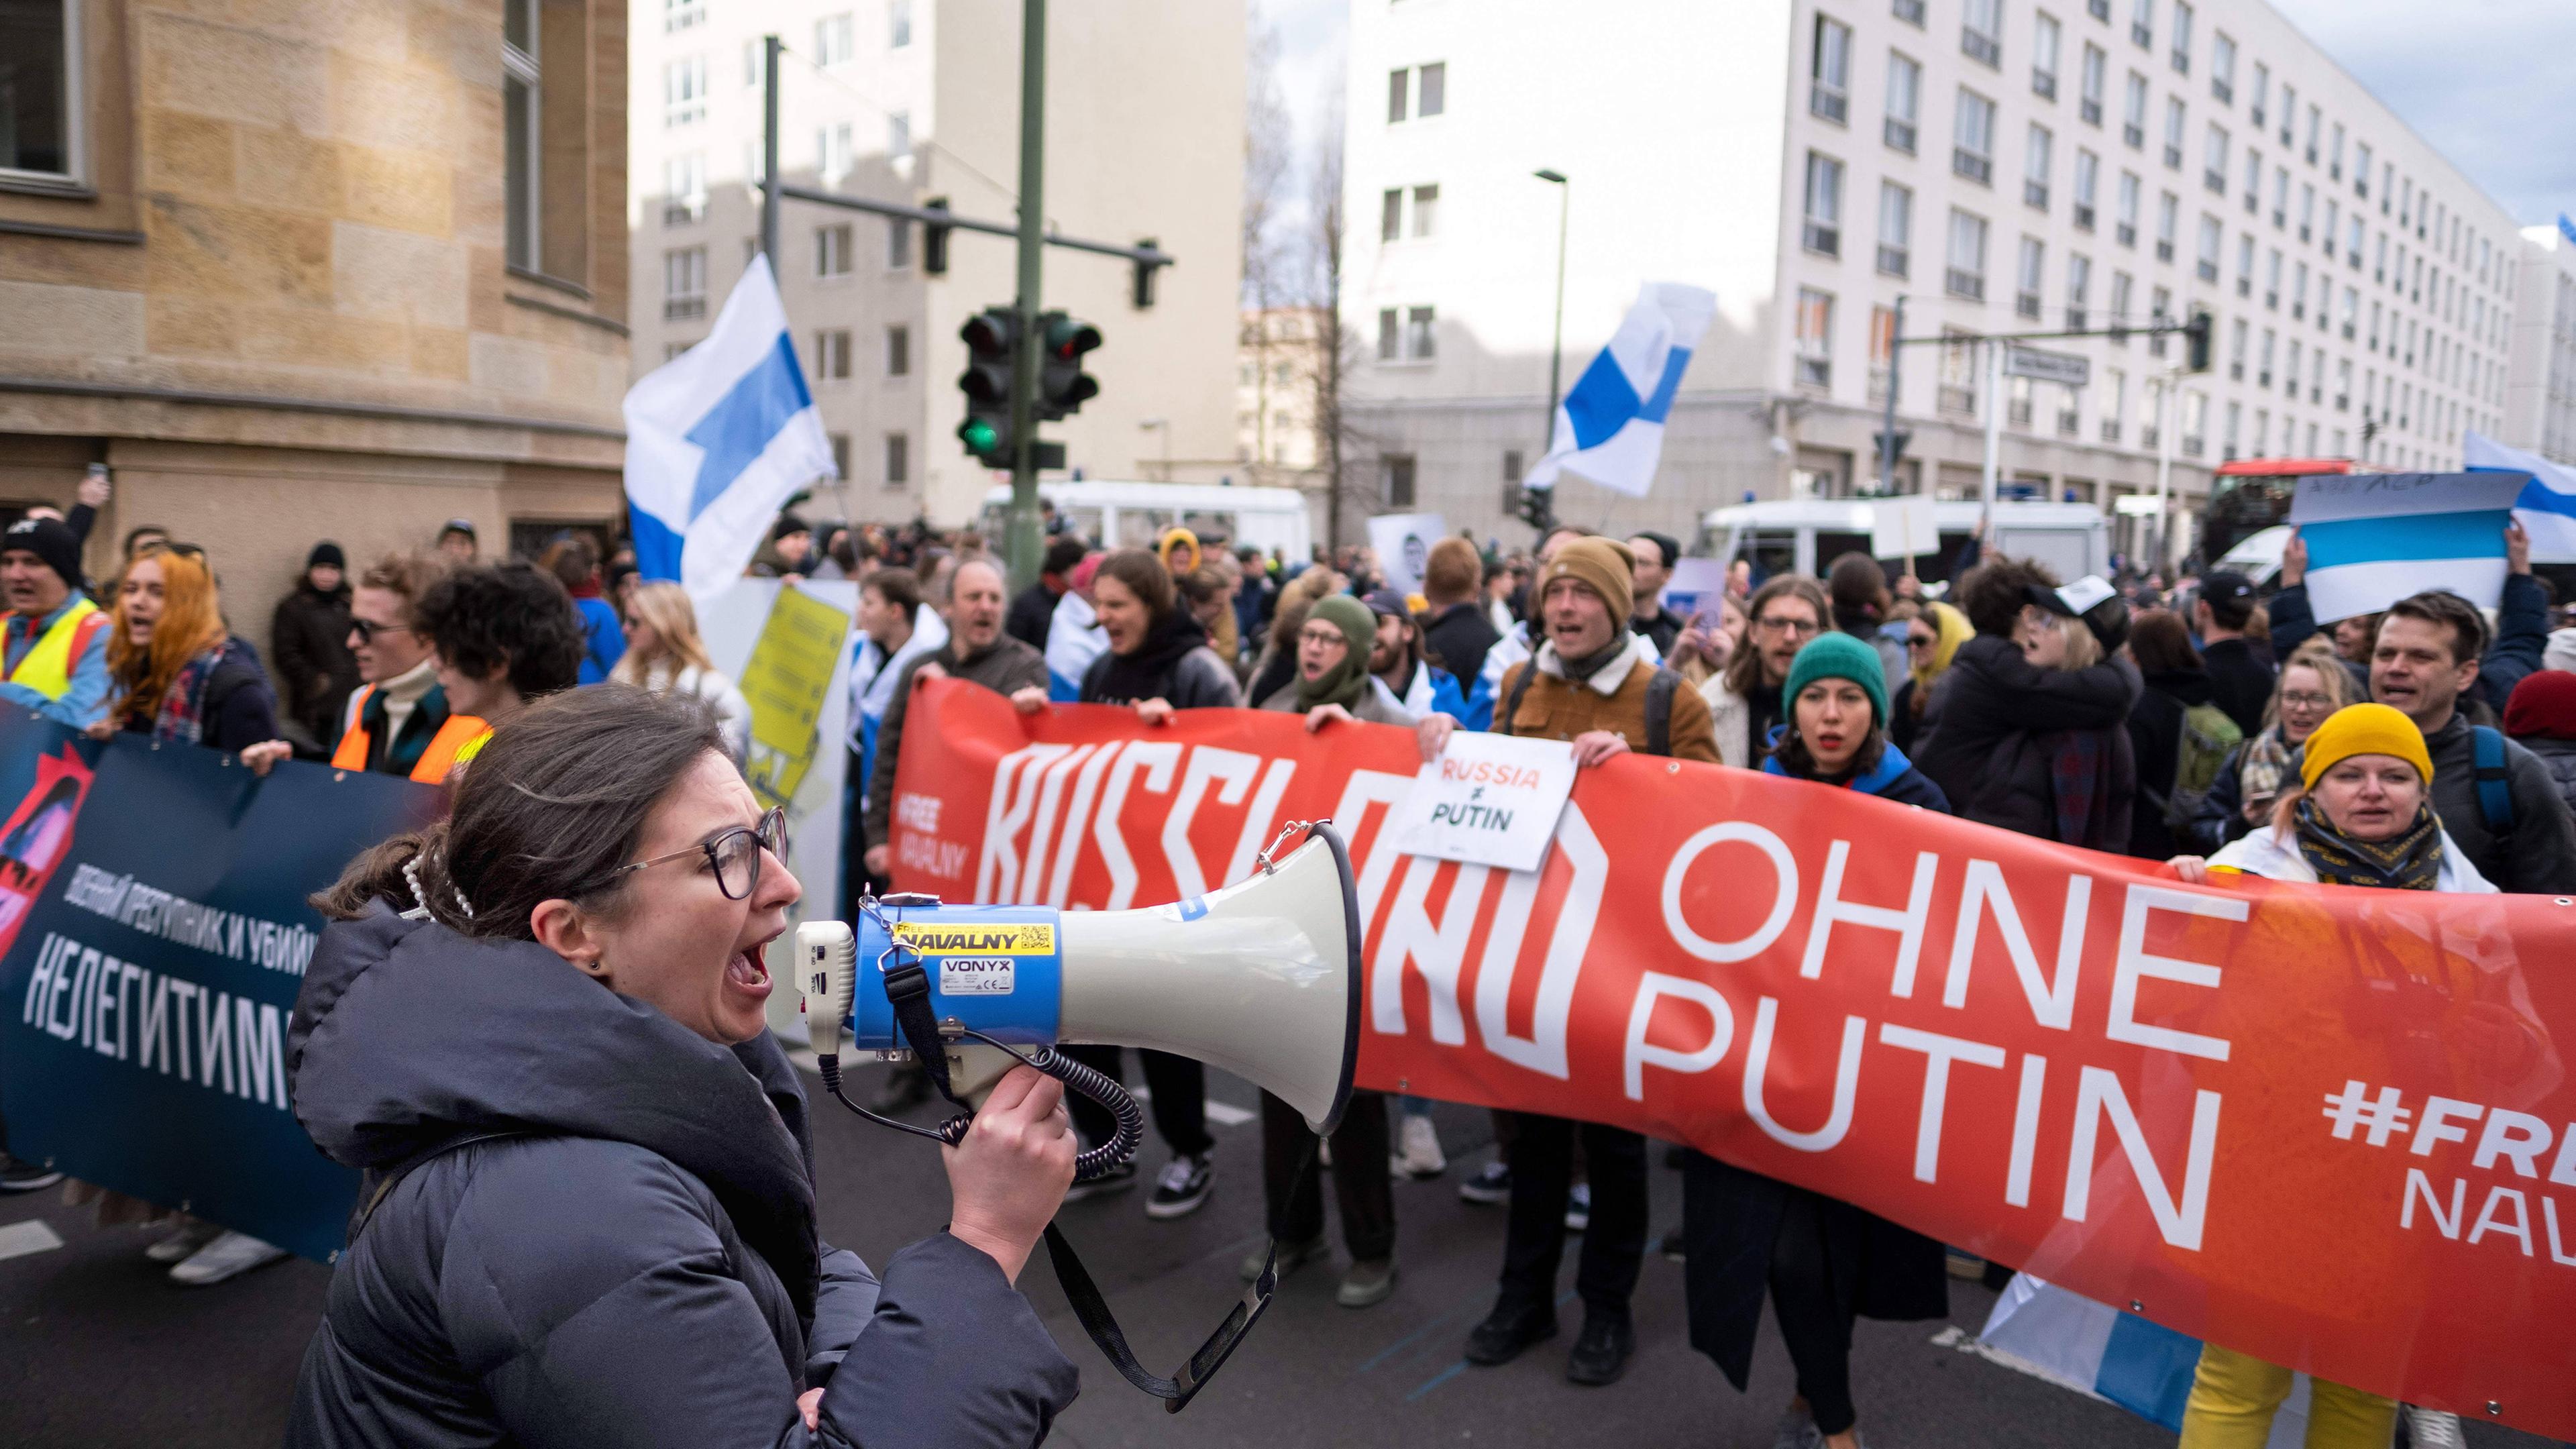 Ein Demonstrationszug mit Bannern mit russischer Schrift. Auf einem roten Banner steht Russland ohne Putin.